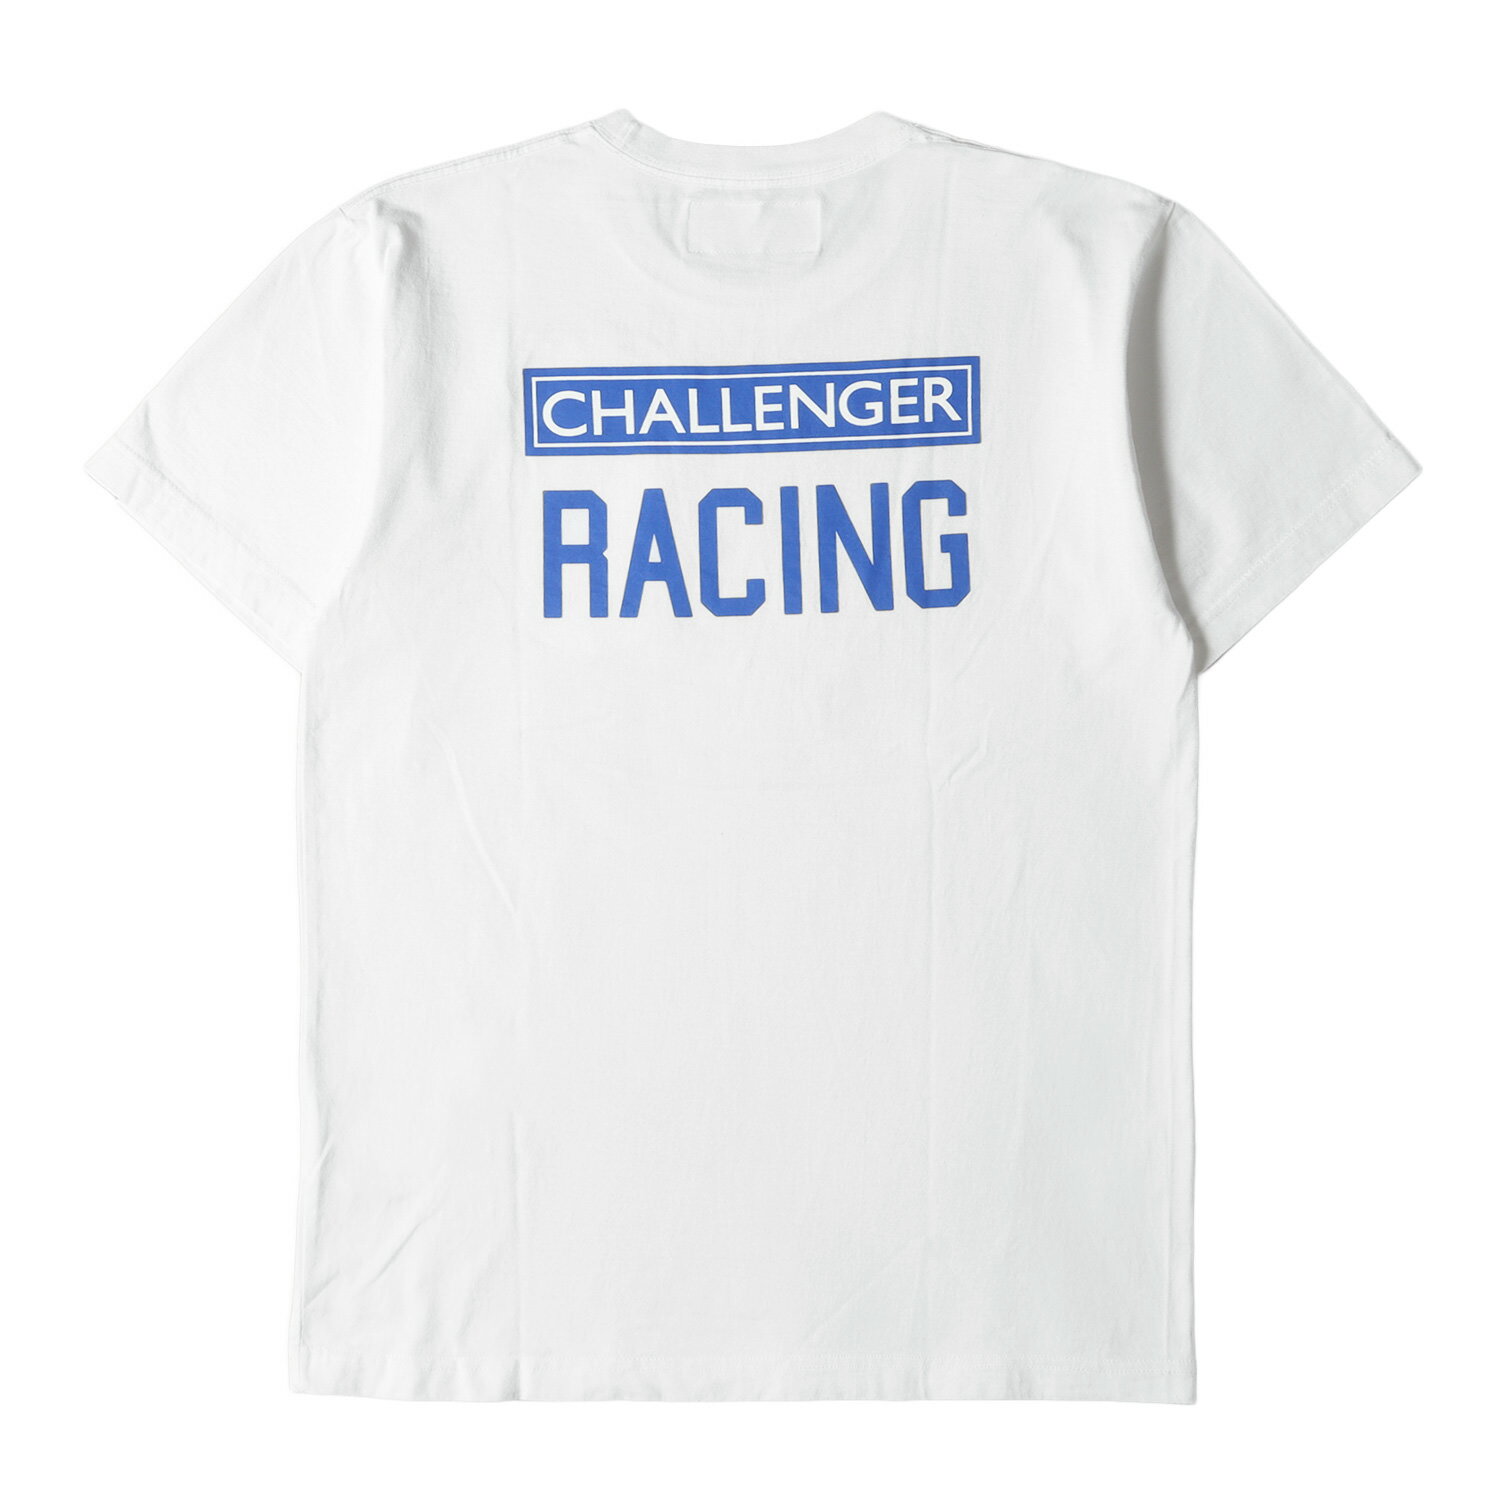 CHALLENGER チャレンジャー Tシャツ サイズ:M ワッペン付き レーシングロゴ クルーネック 半袖 ポケット Tシャツ RACING TEE 18SS ホワイト 白 トップス カットソー 